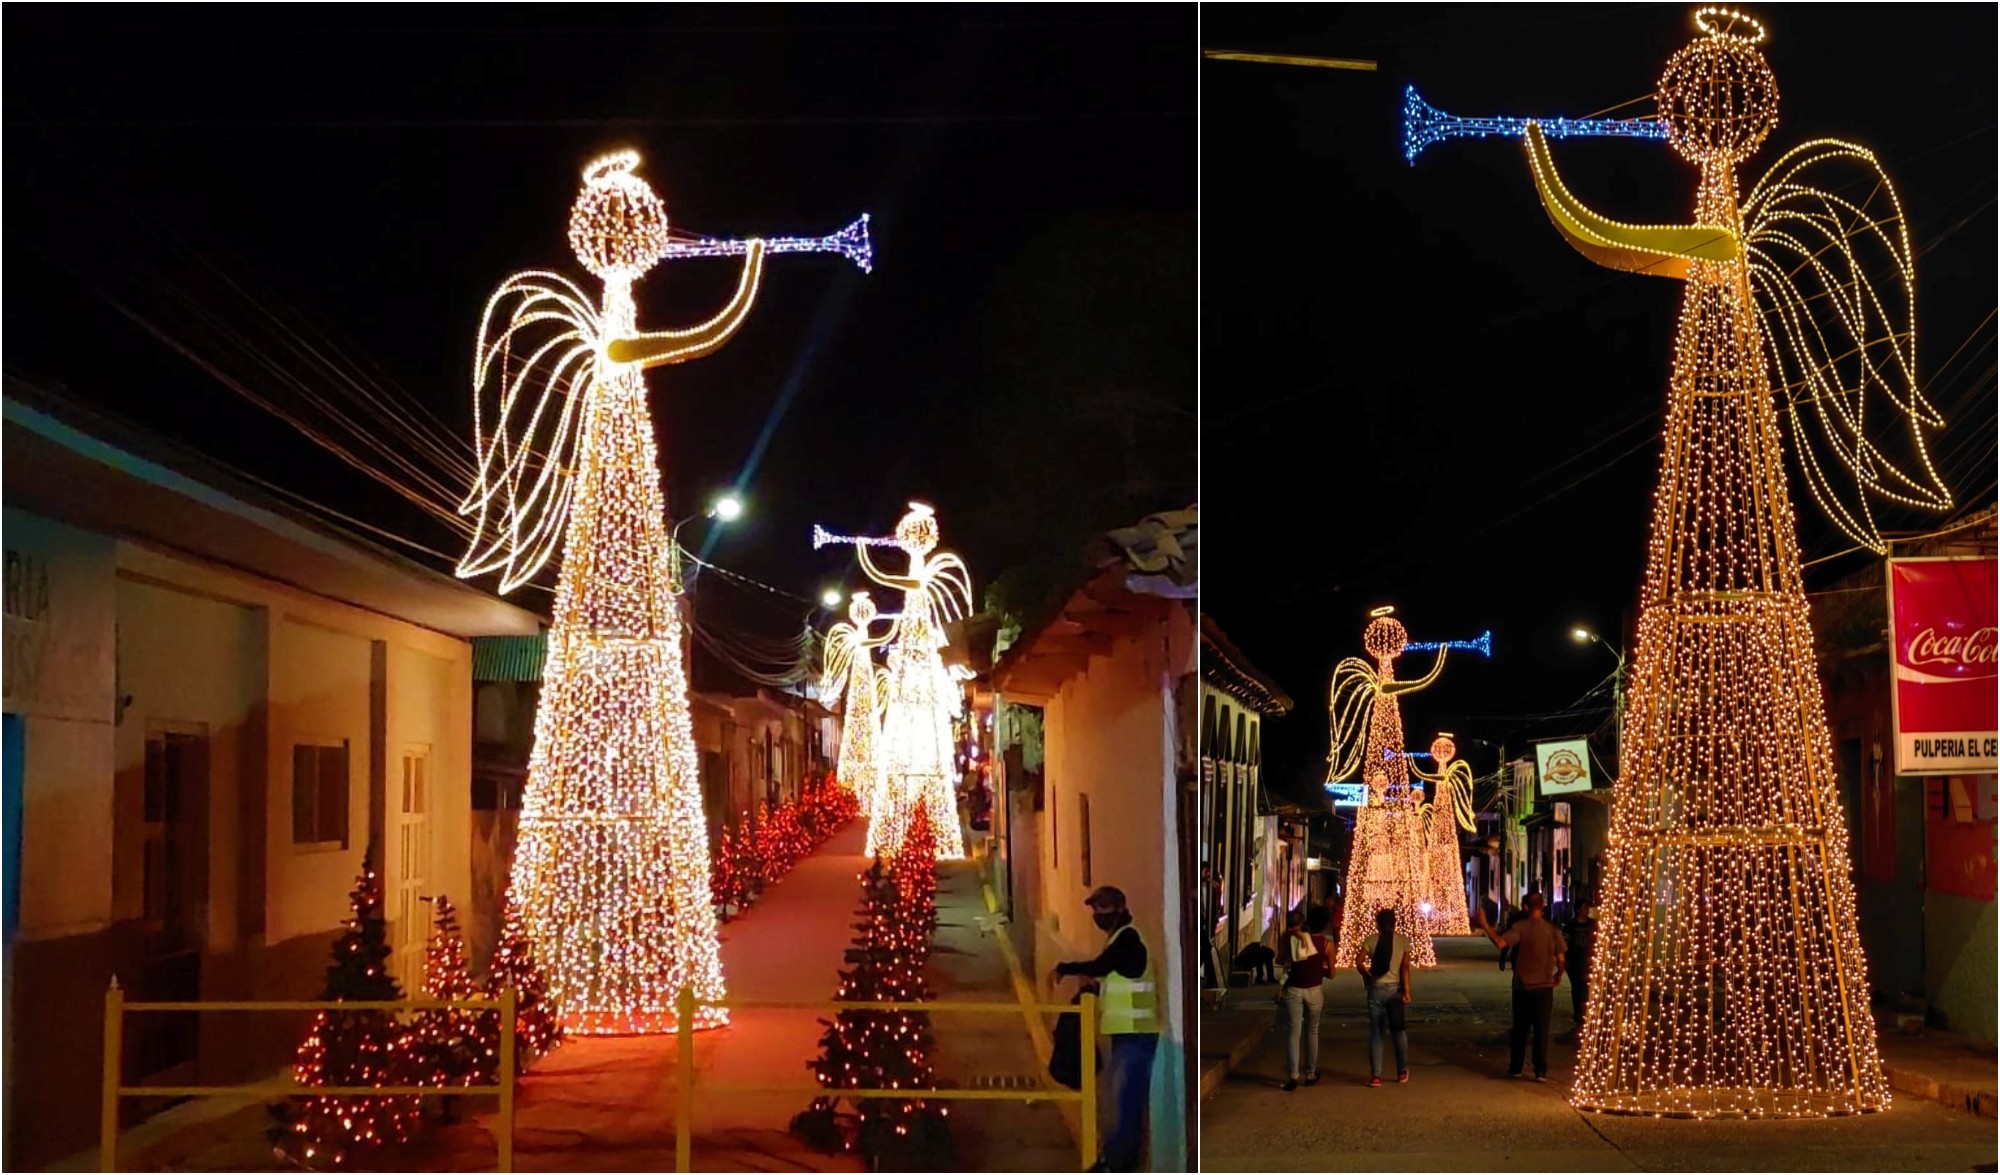 San Jose de Colinas y su hermosa decoración navideña